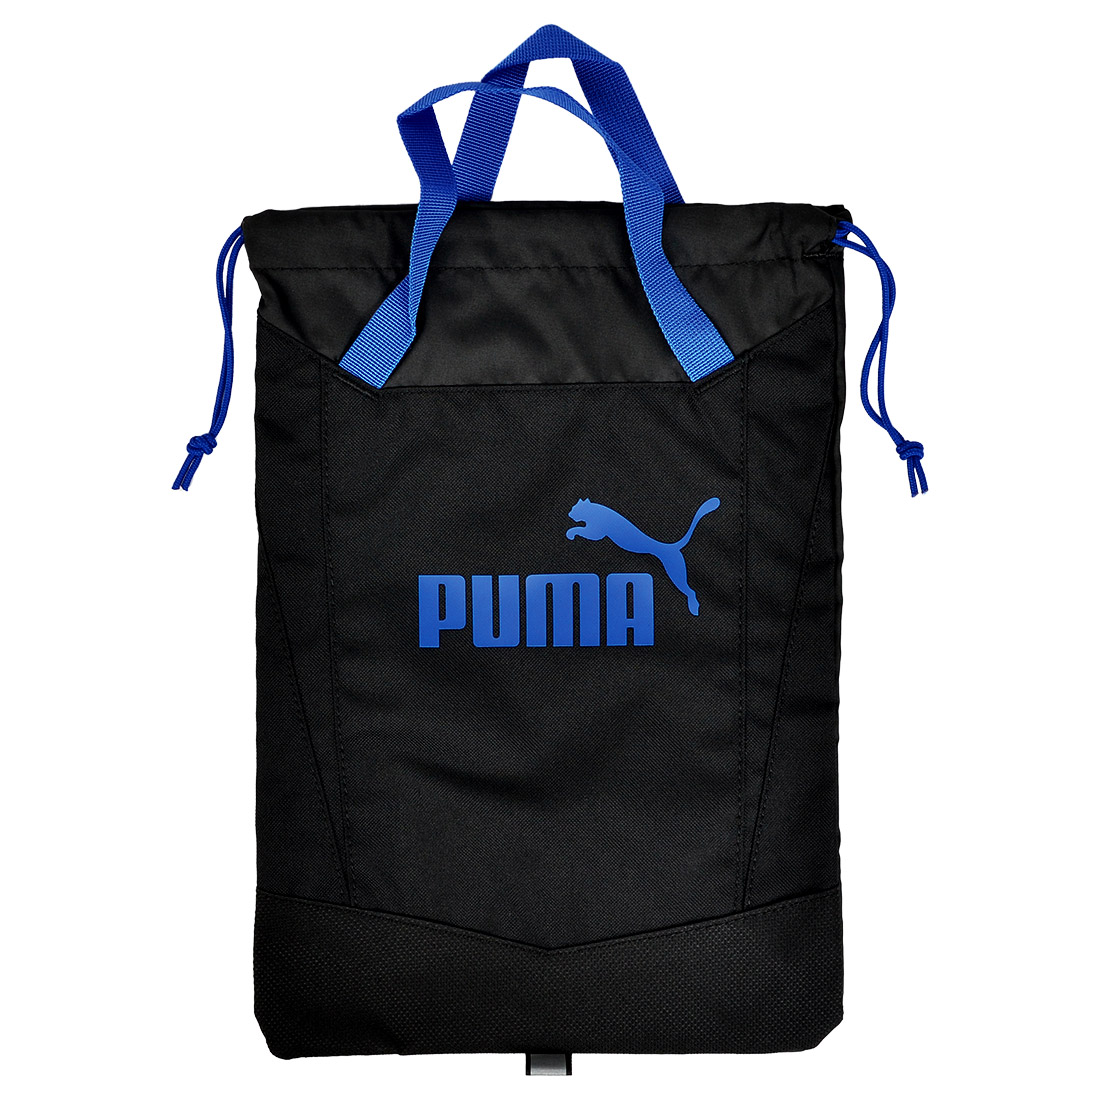 最新デザインの シューズバッグ PUMA シューズケース プーマ 079033